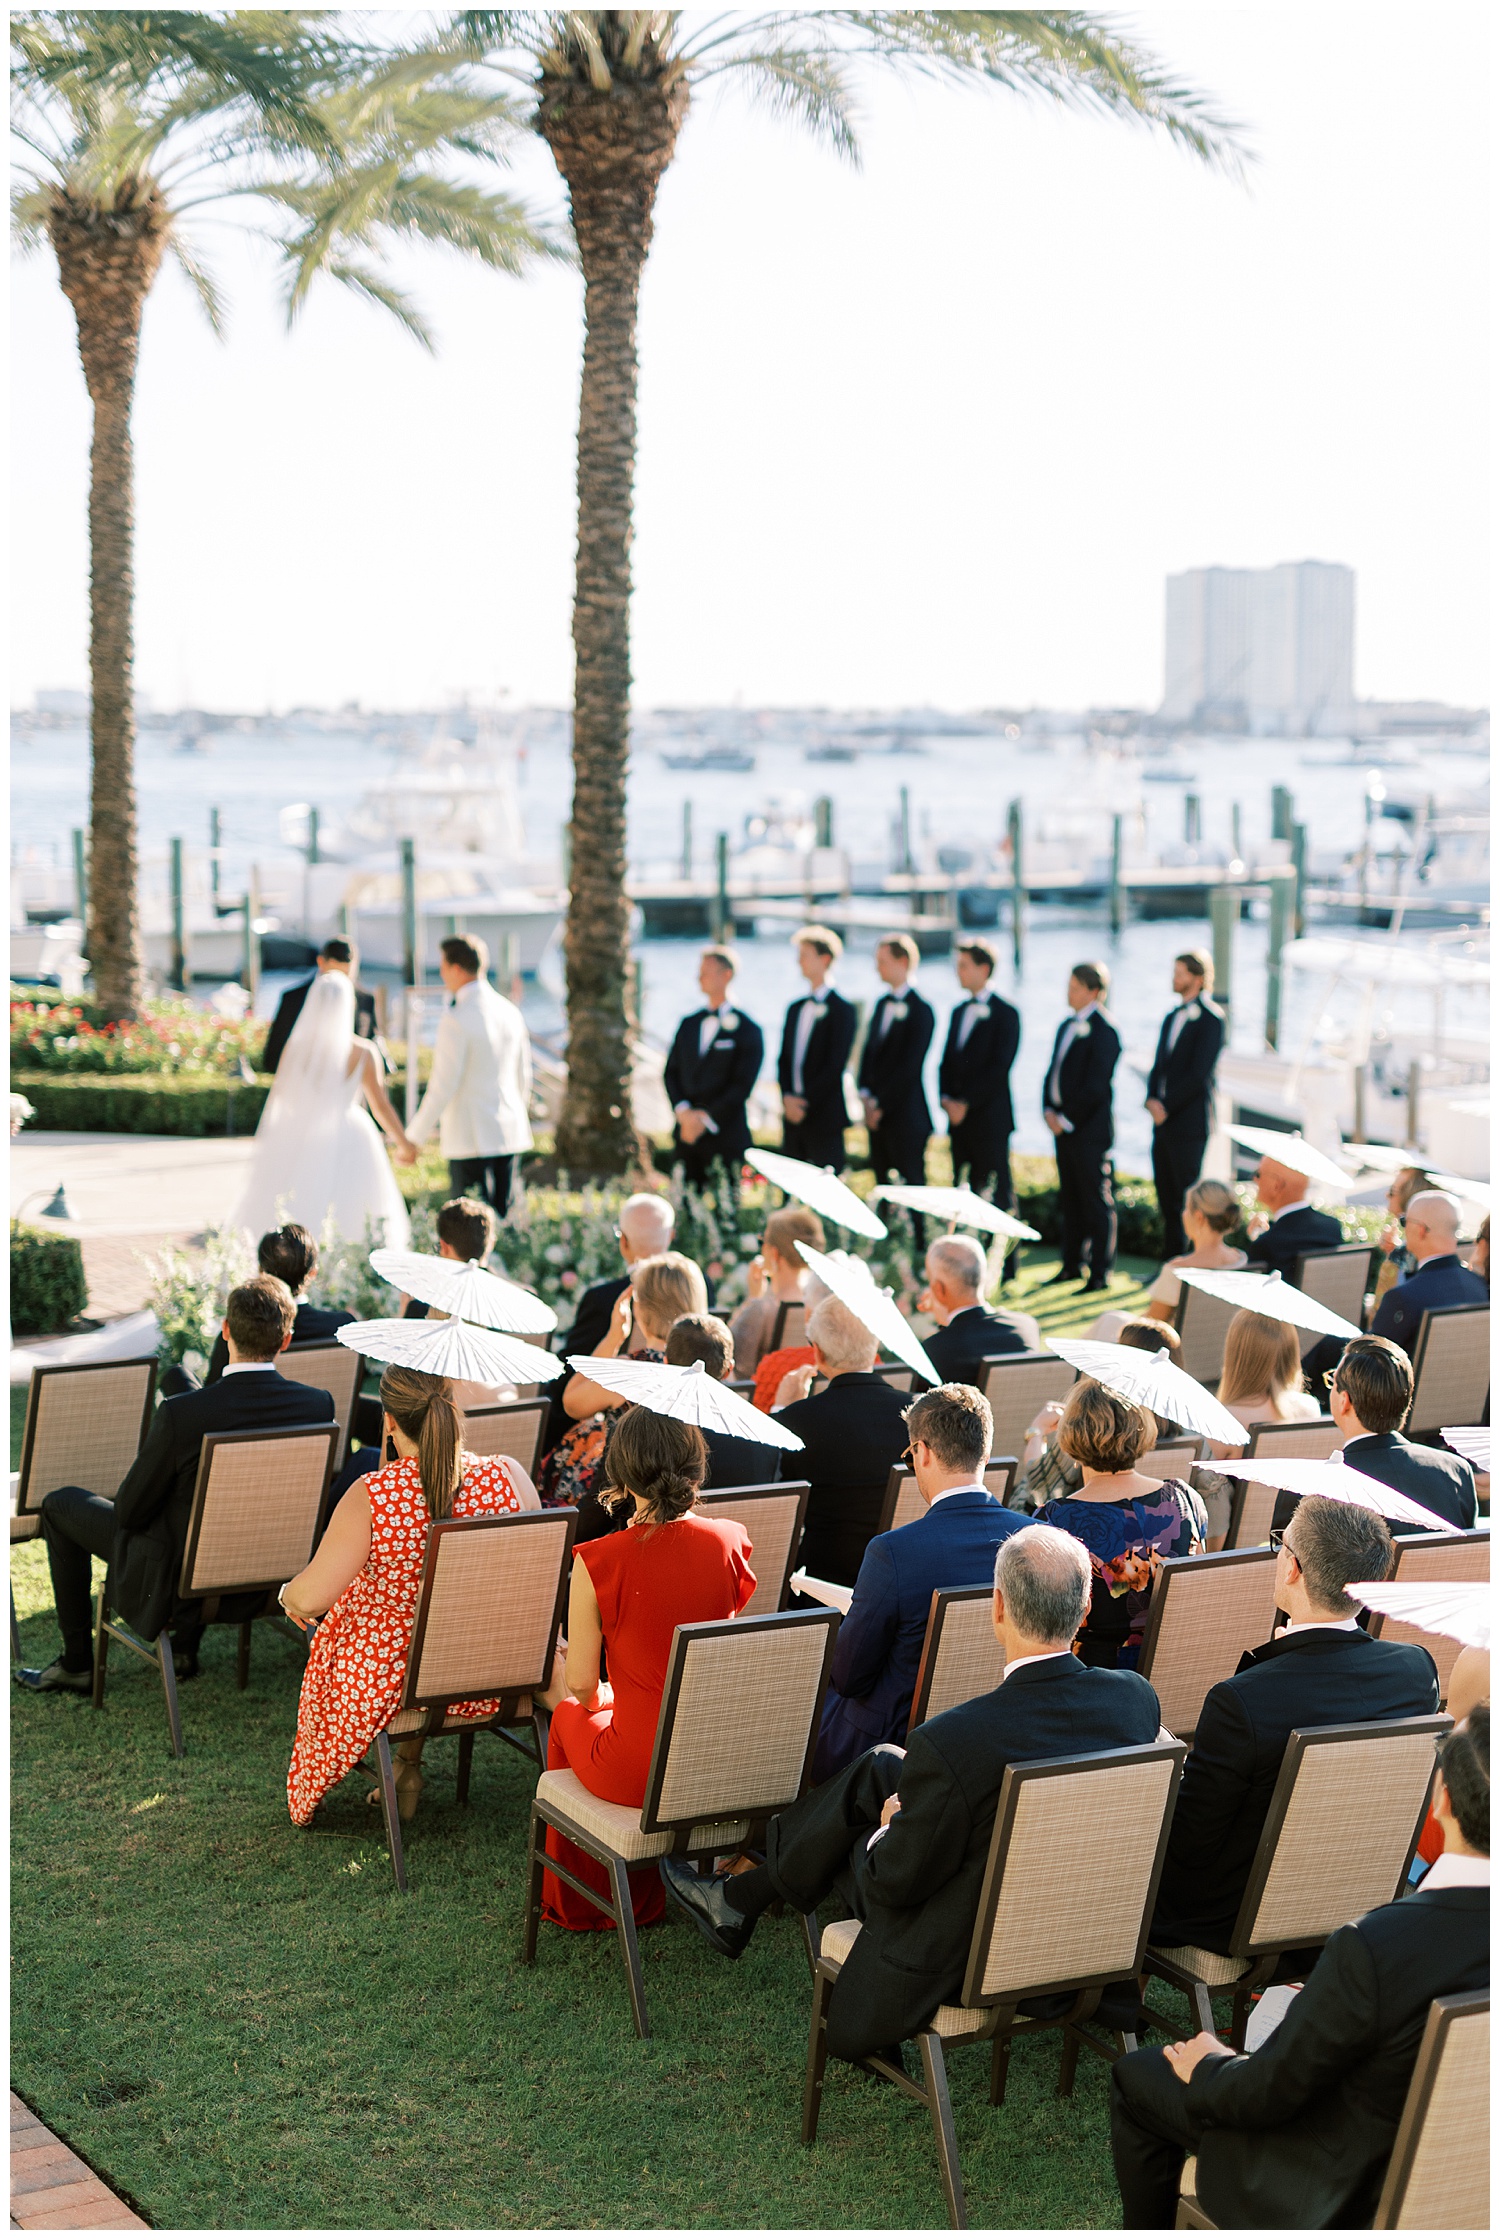 Wedding ceremony at Sailfish Club in Palm Beach, Florida